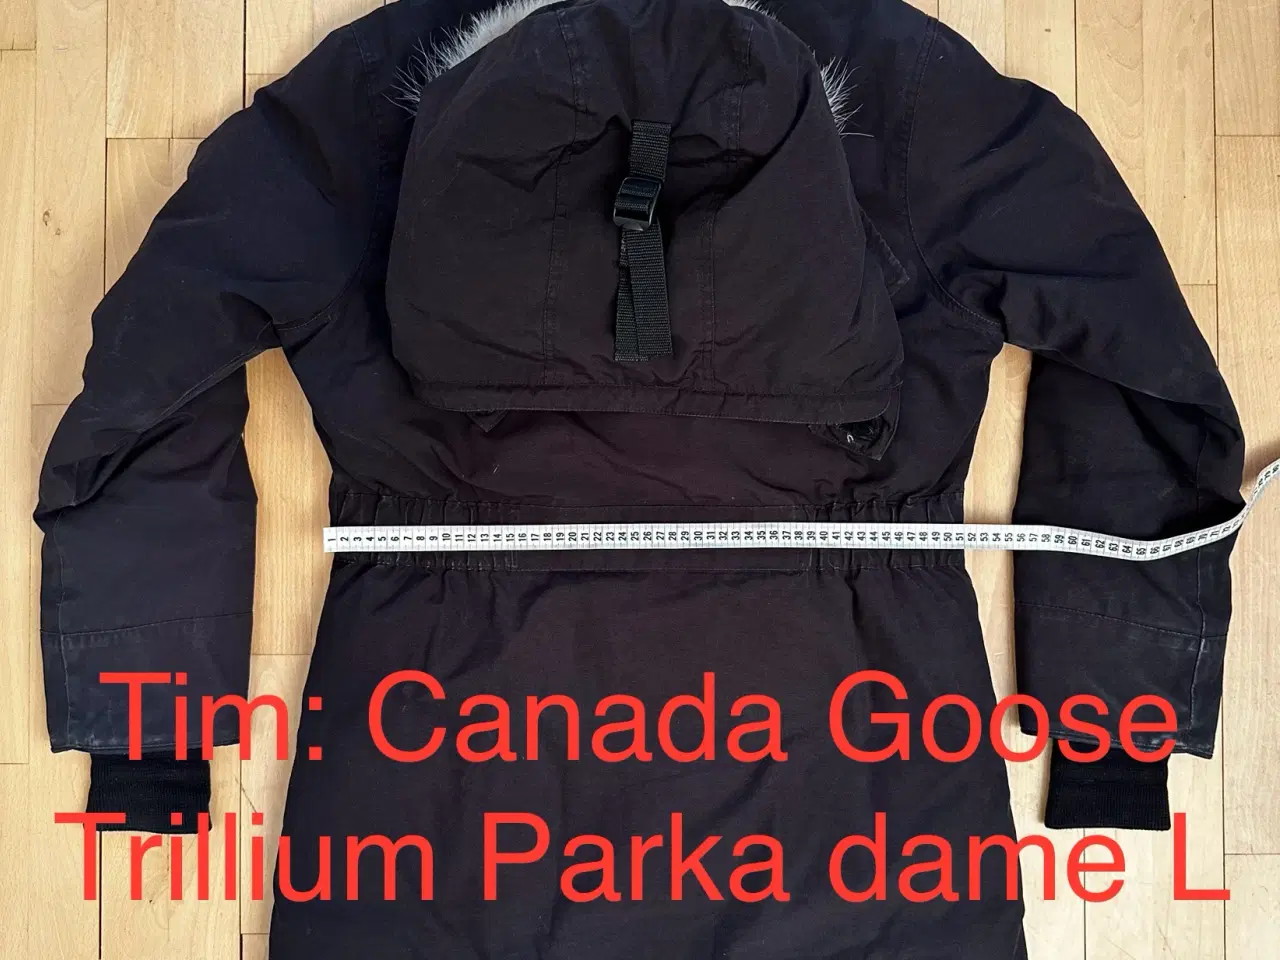 Billede 6 - Canada Goose Trillium Parka dame L 